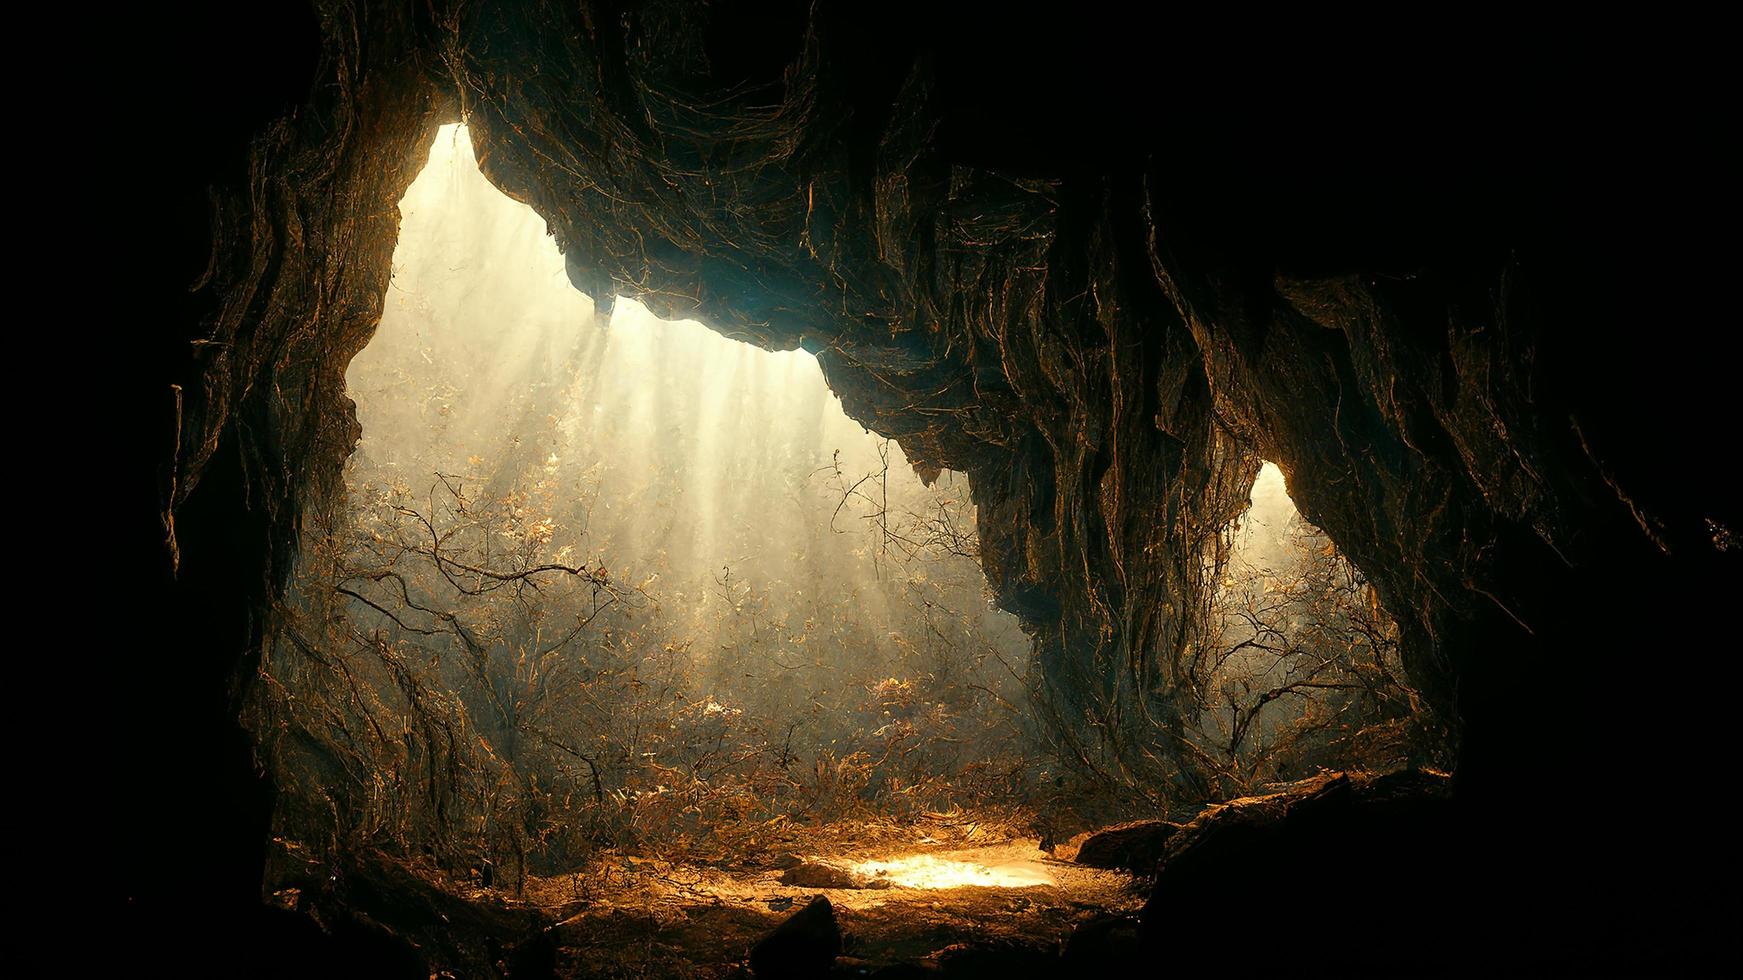 luz dramática na paisagem da caverna escura, misteriosa e surreal, arte digital foto